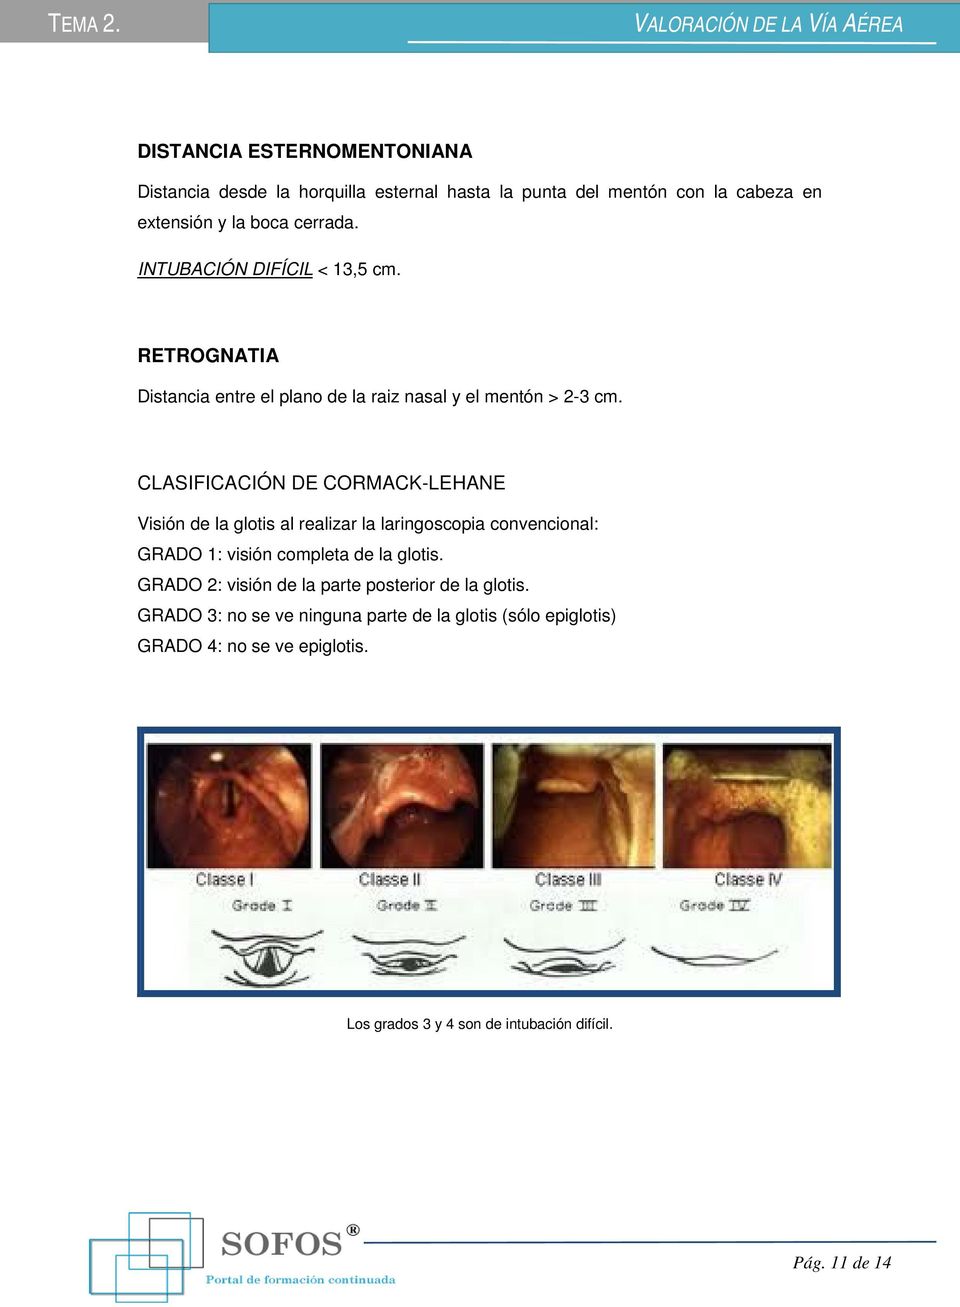 CLASIFICACIÓN DE CORMACK-LEHANE Visión de la glotis al realizar la laringoscopia convencional: GRADO 1: visión completa de la glotis.